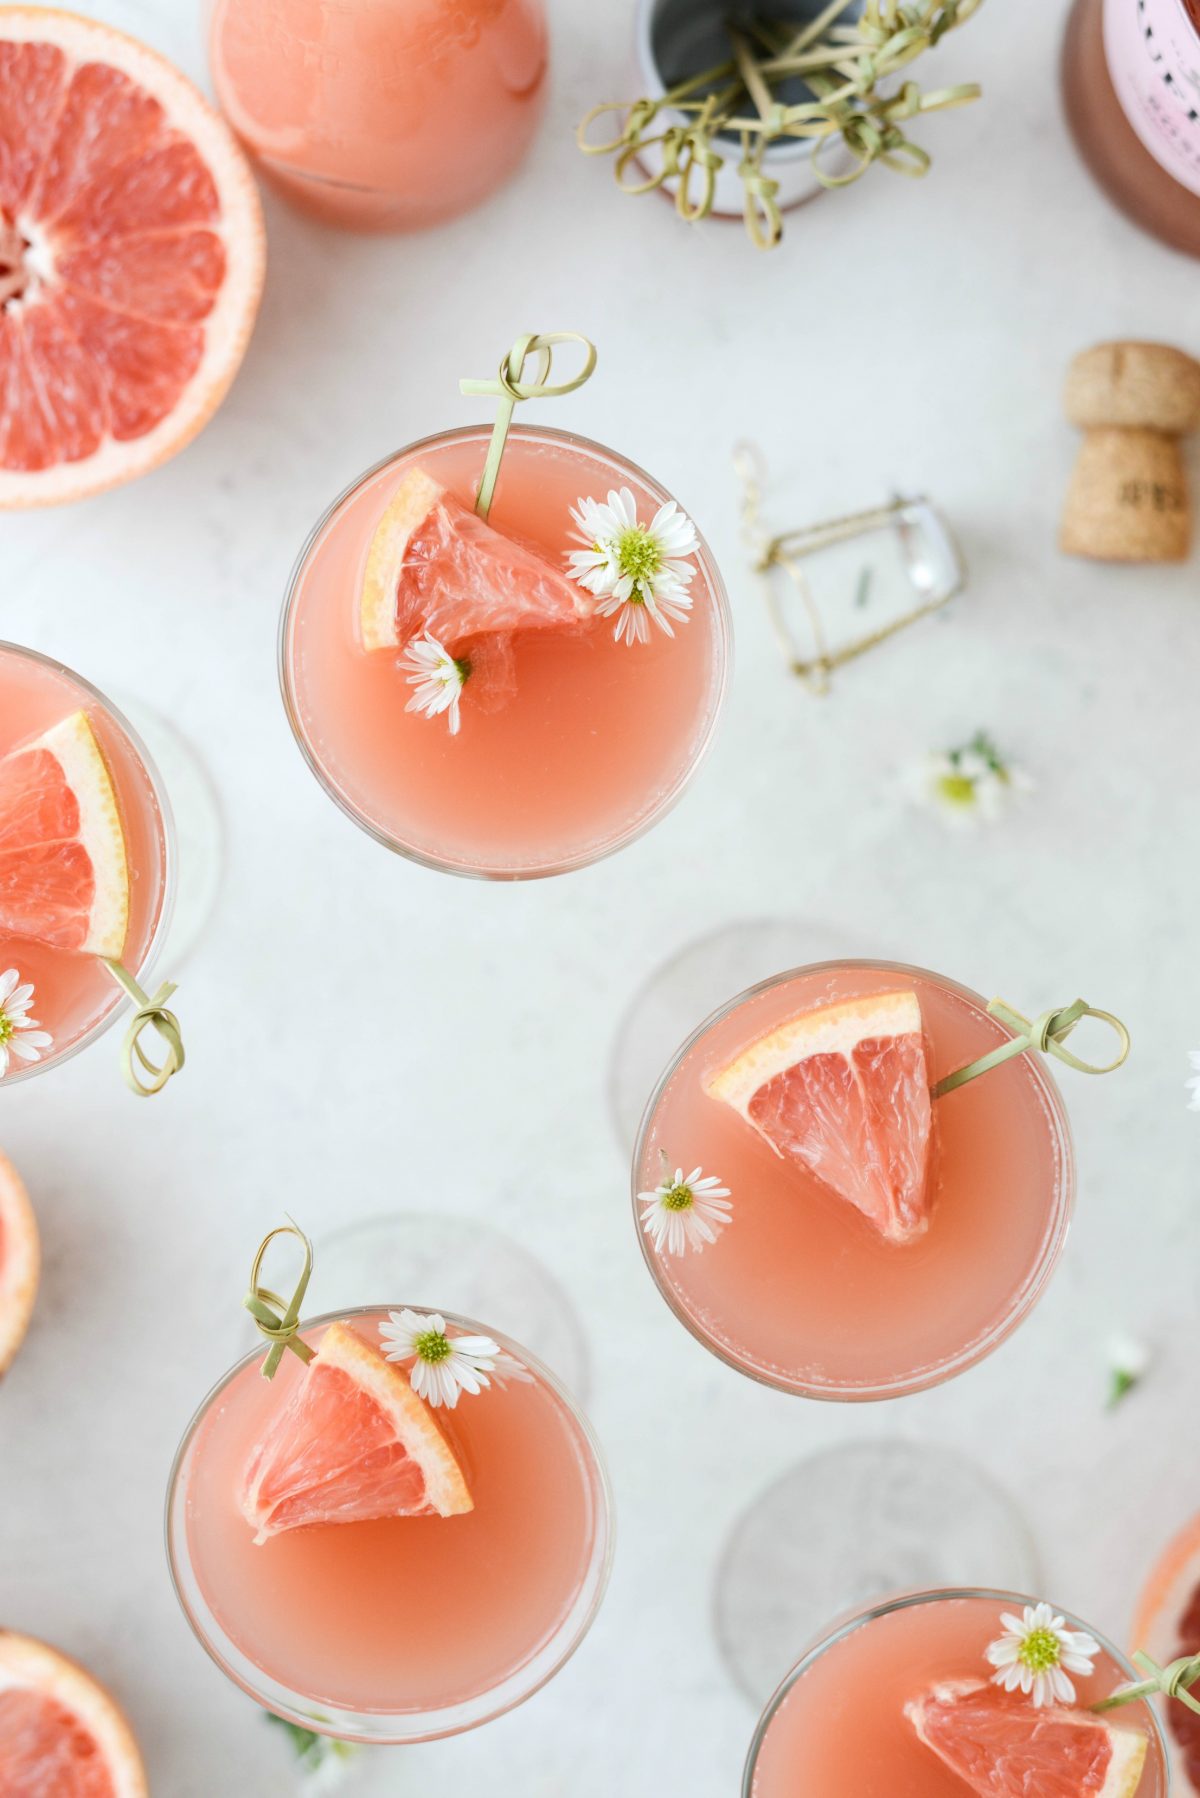  Grapefruit Rosus Mimosas l SimplyScratch.com # adult # băutură # grapefruit # trandafir # mimosa # Paște # brunch # Ziua Mamei